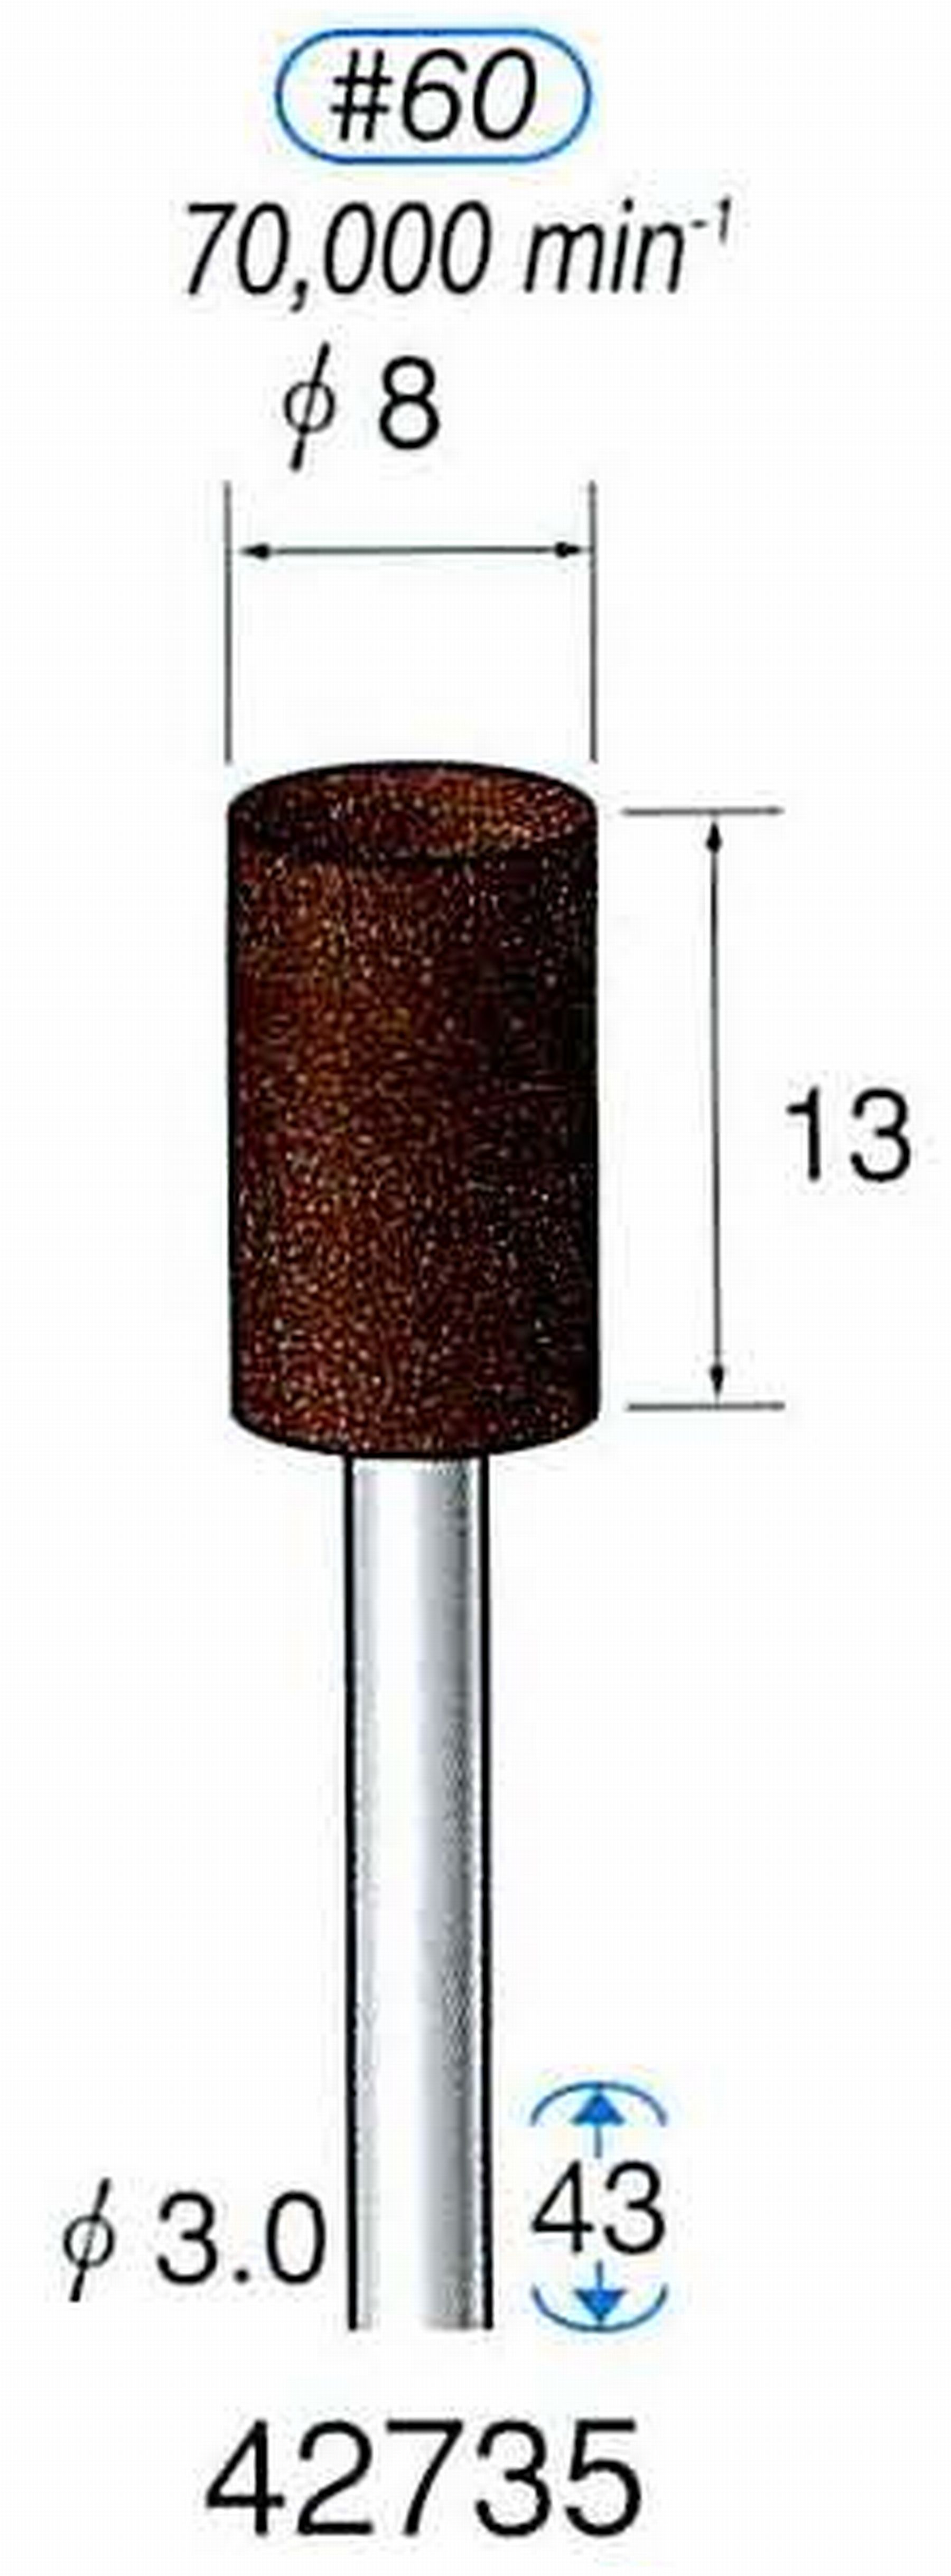 ナカニシ/NAKANISHI 軸付砥石(A・WA砥粒) ブラウン砥石 軸径(シャンク) φ3.0mm 42735